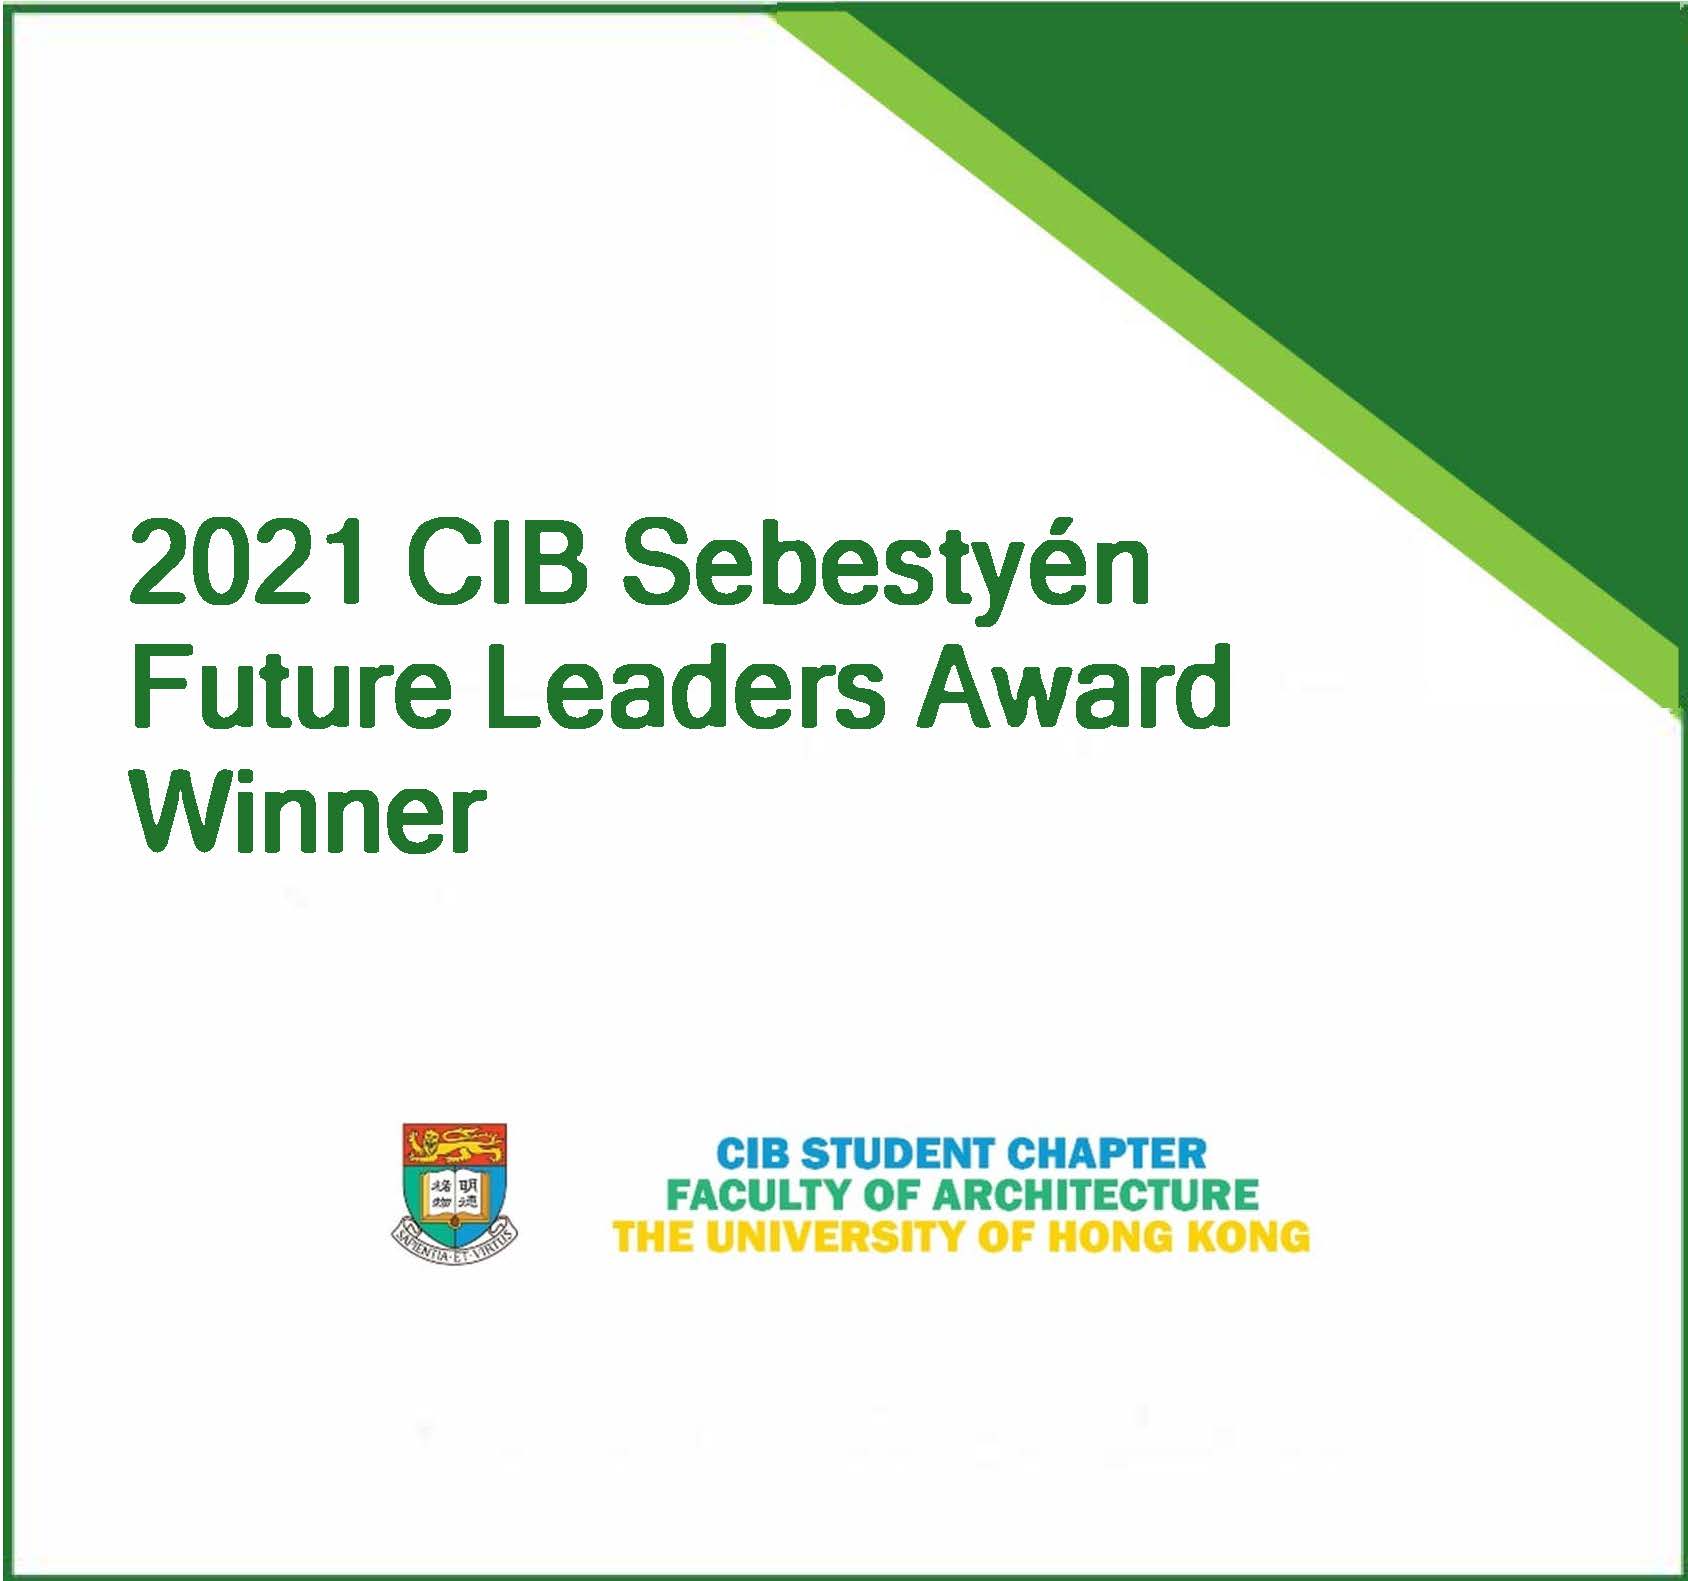 CIB Student Chapter of The University of Hong Kong wins Sebestyén Future Leaders Award